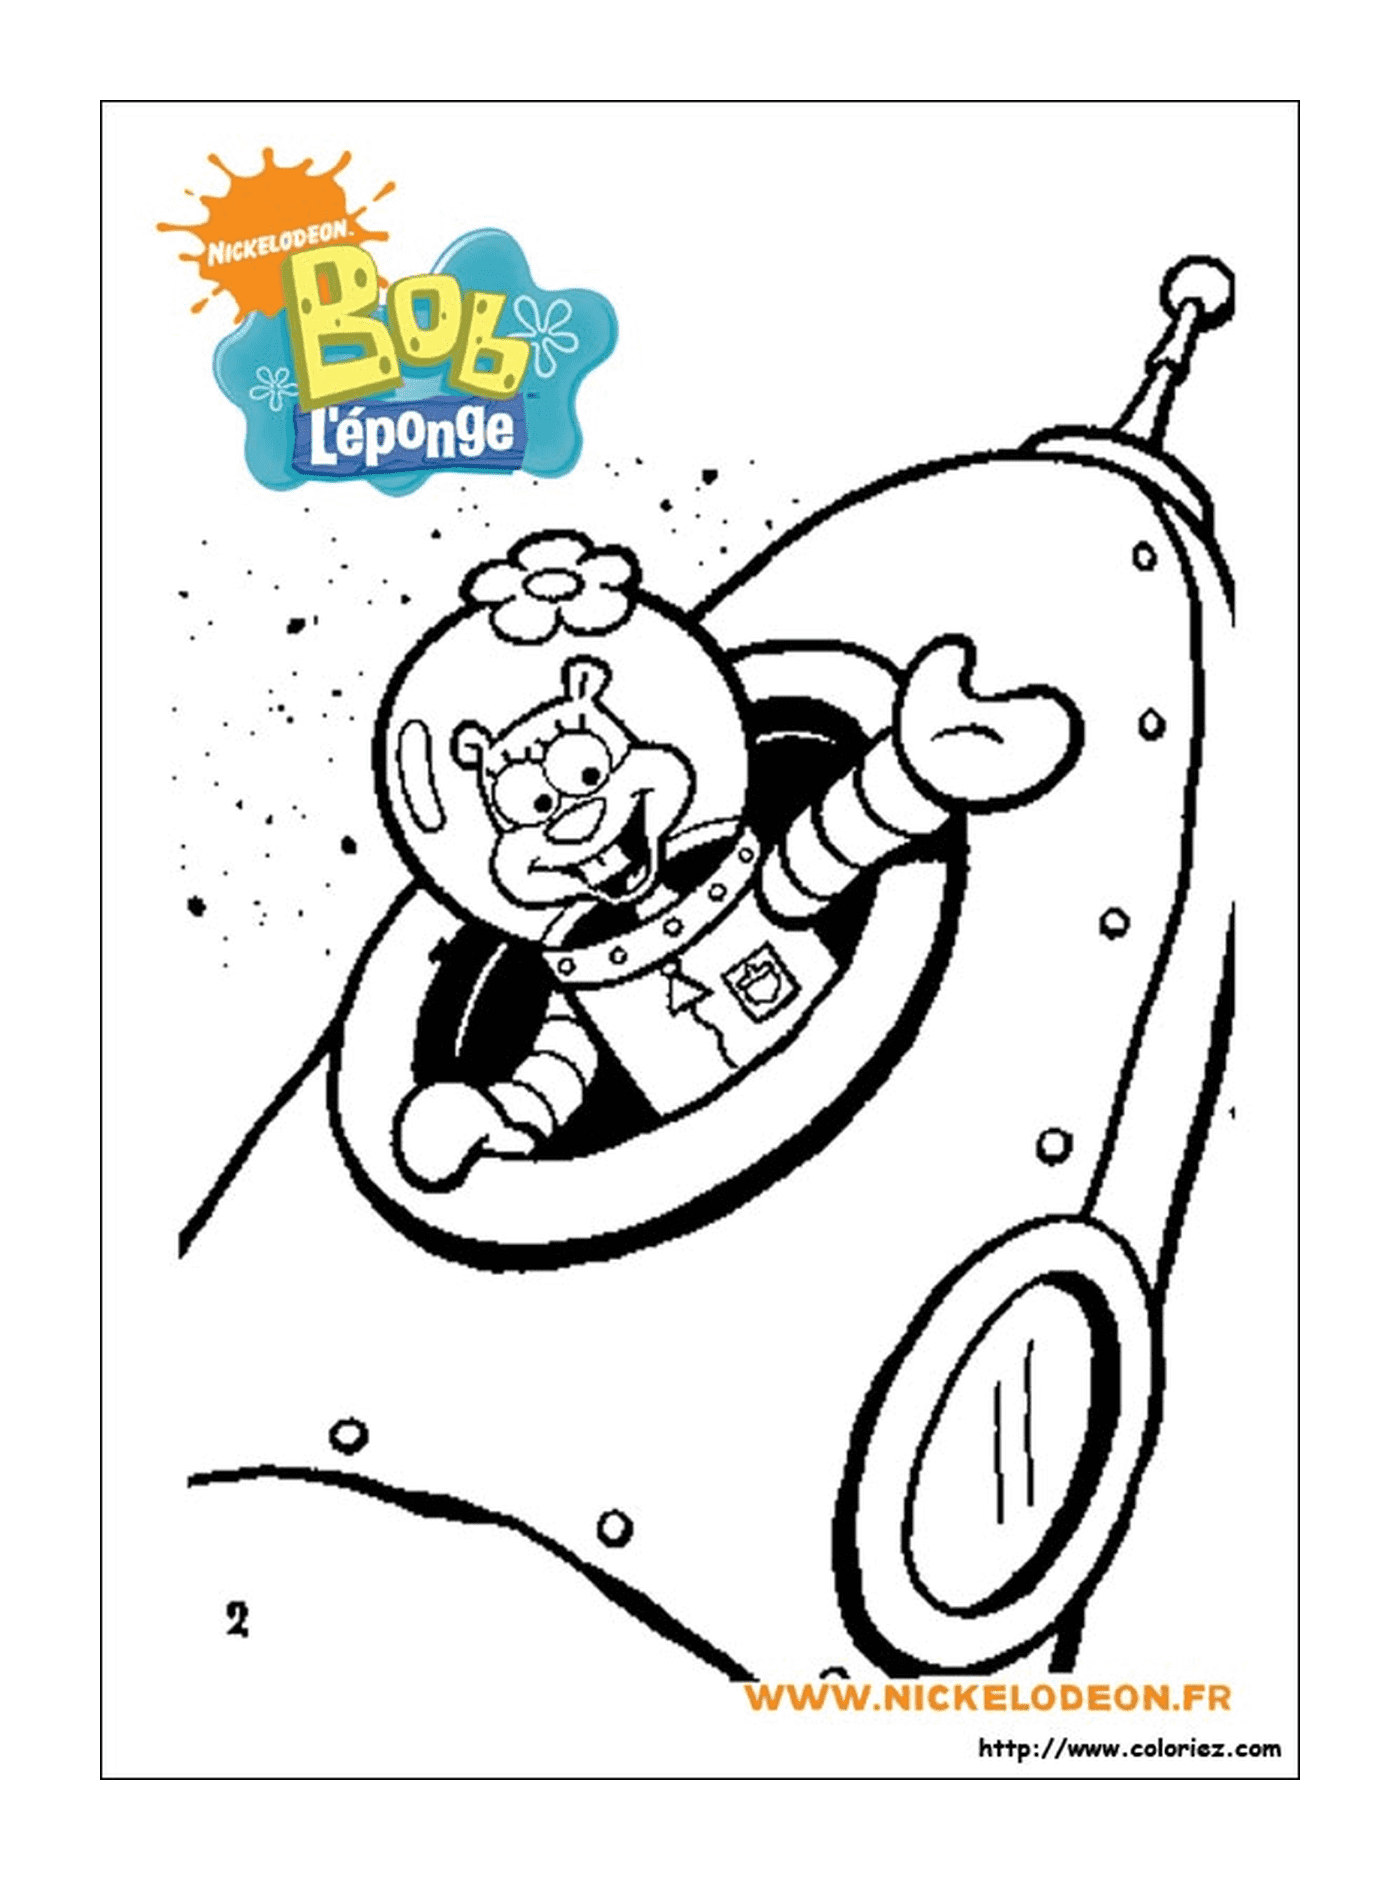   Bob l'éponge, un personnage de dessin animé, habillé en astronaute 